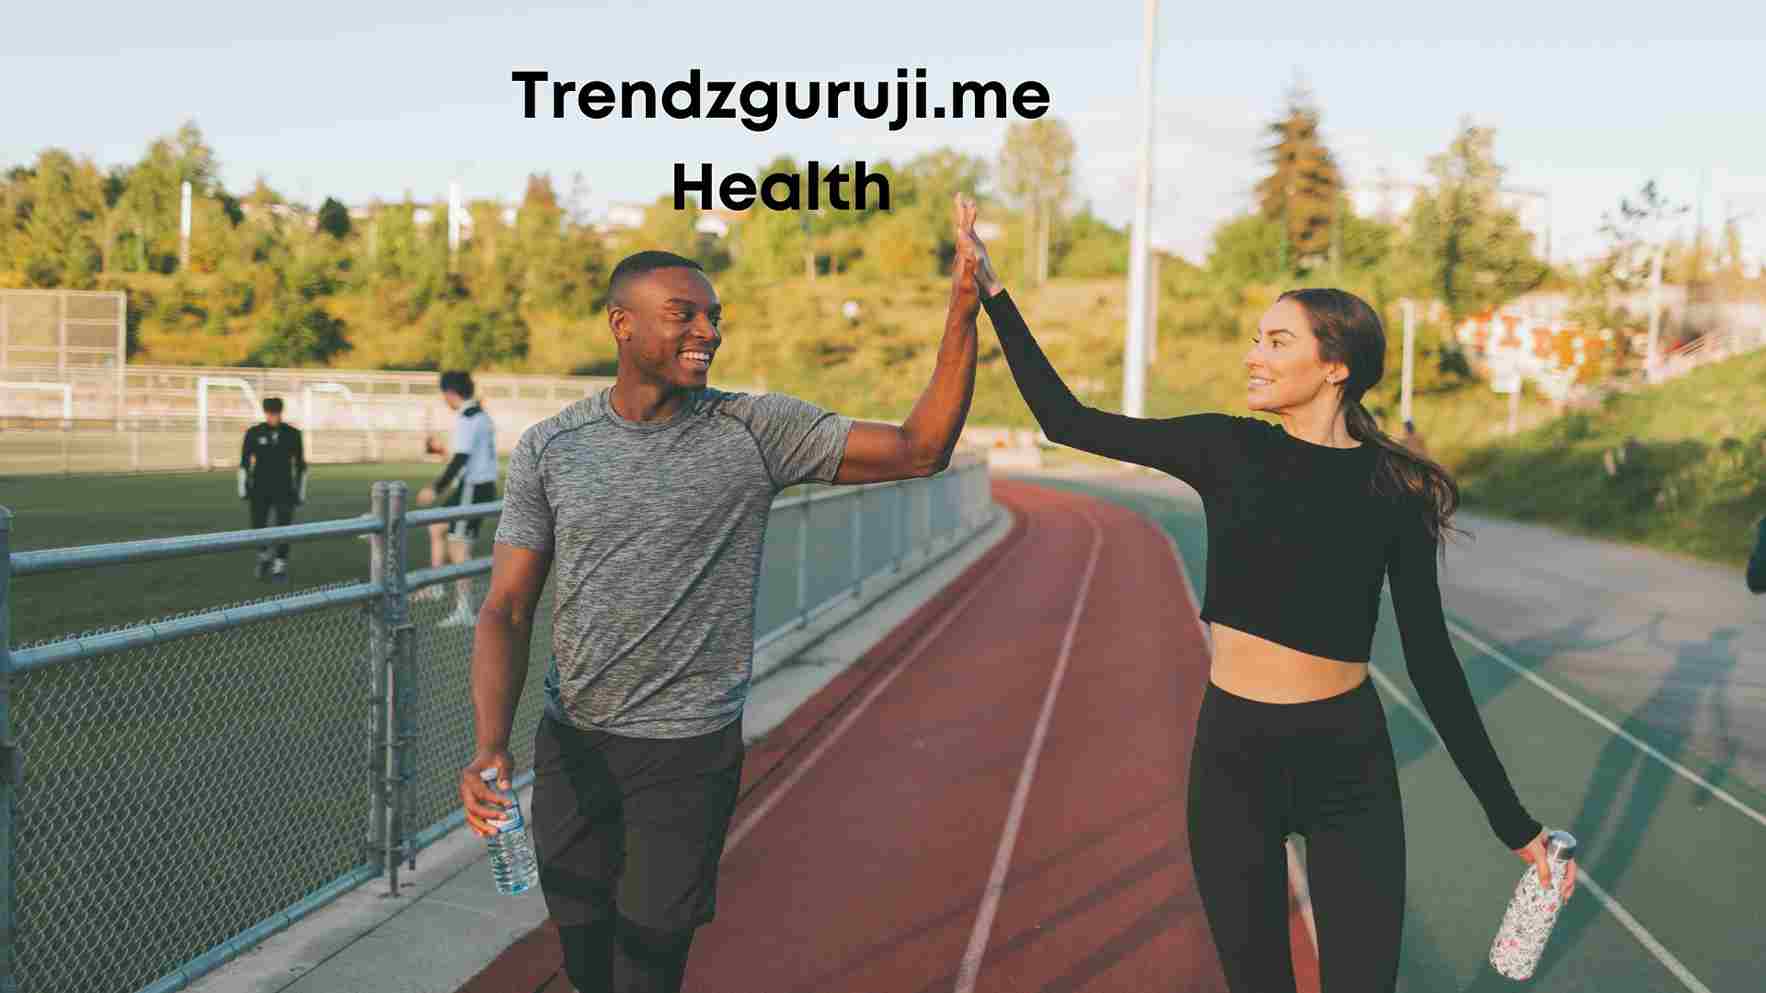 TrendzGuruji.me health